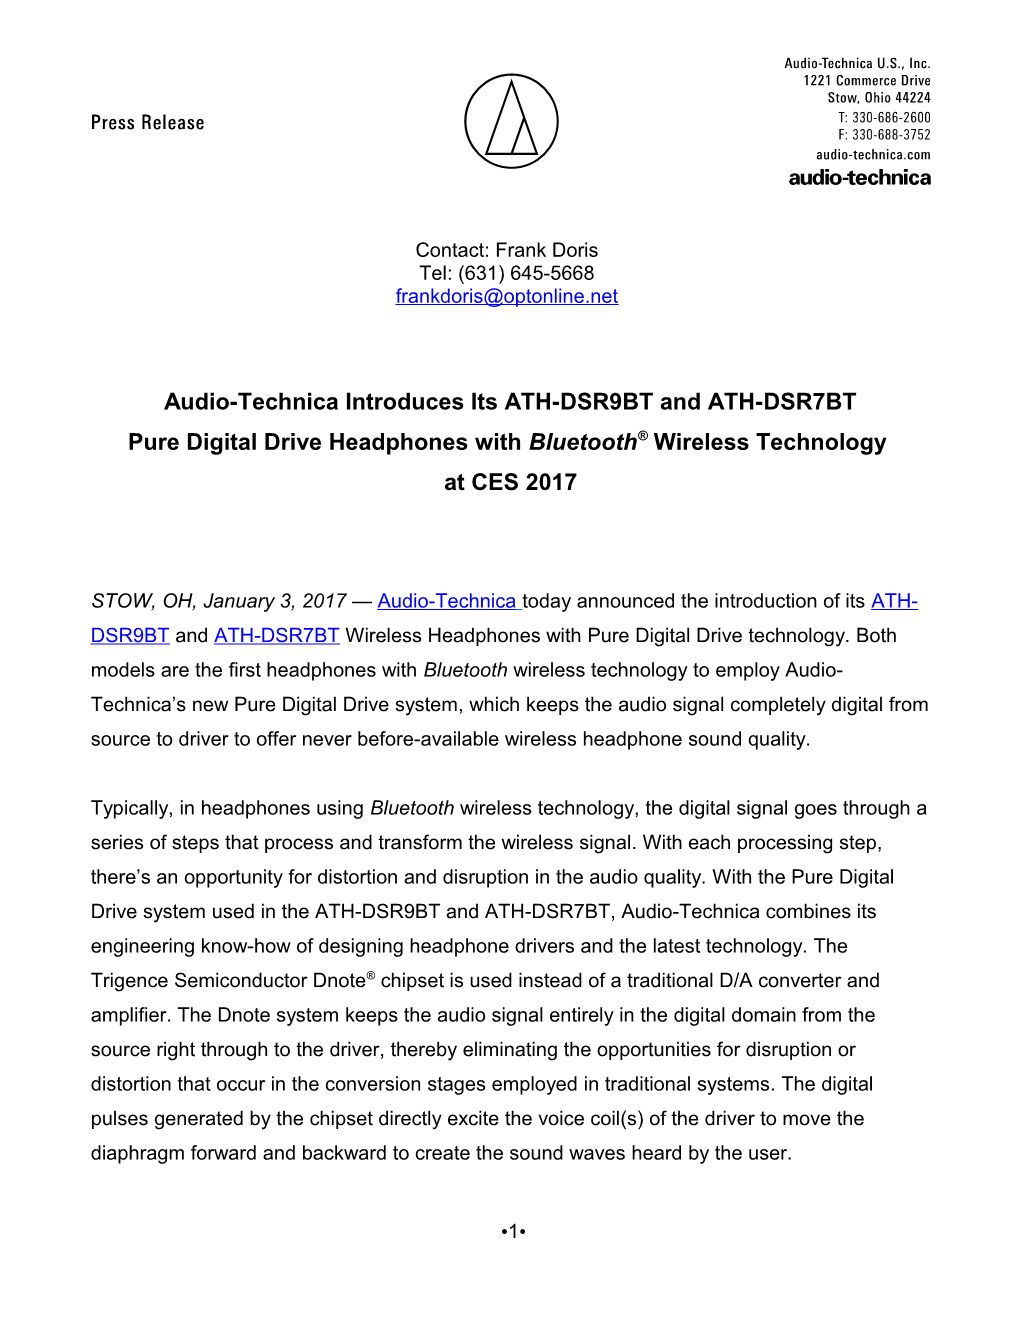 Audio-Technica AT-LP60 Press Release